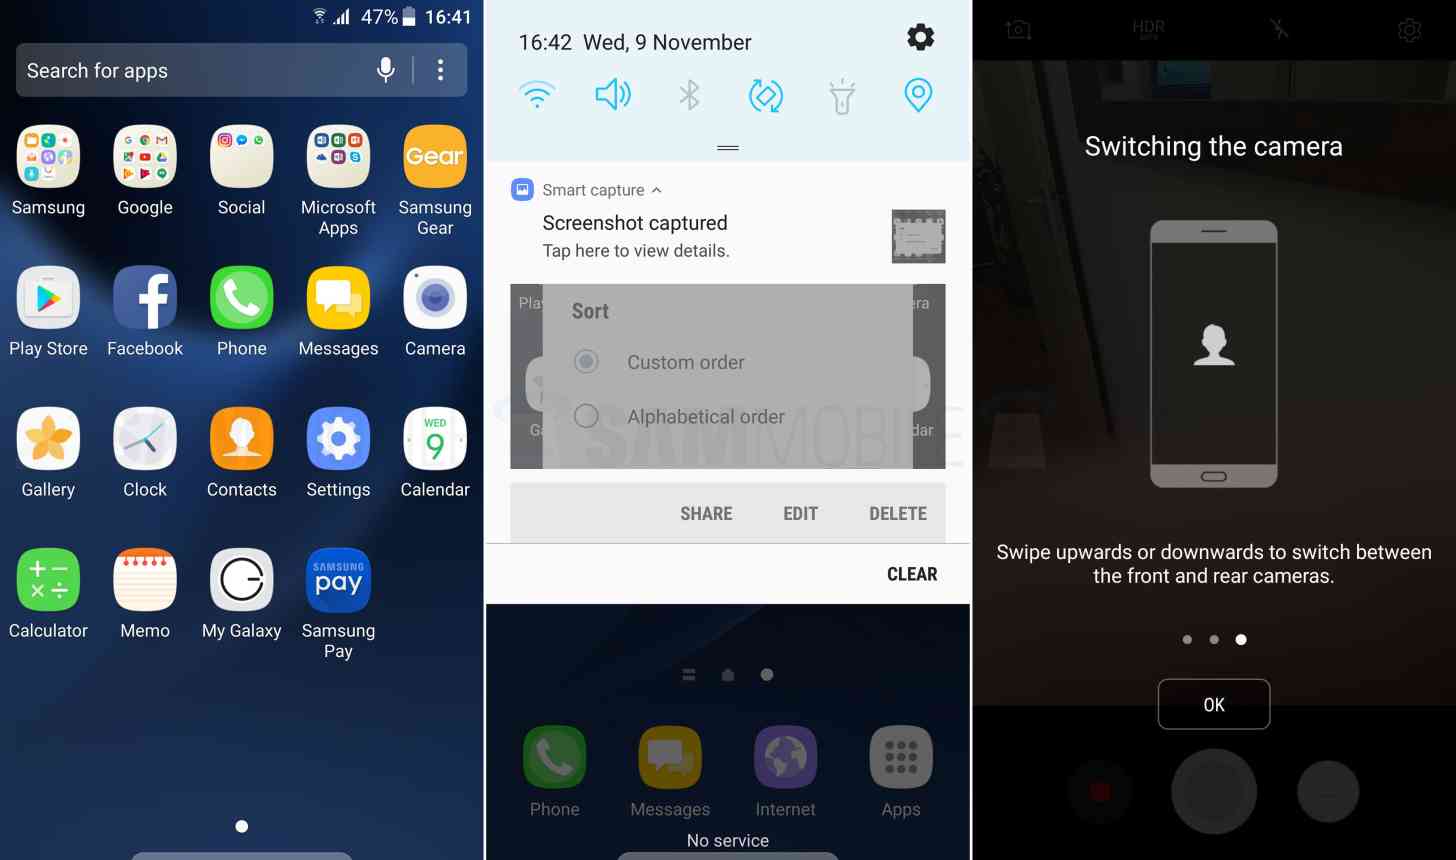 Samsung Galaxy S7 Android 7.0 Nougat screenshots